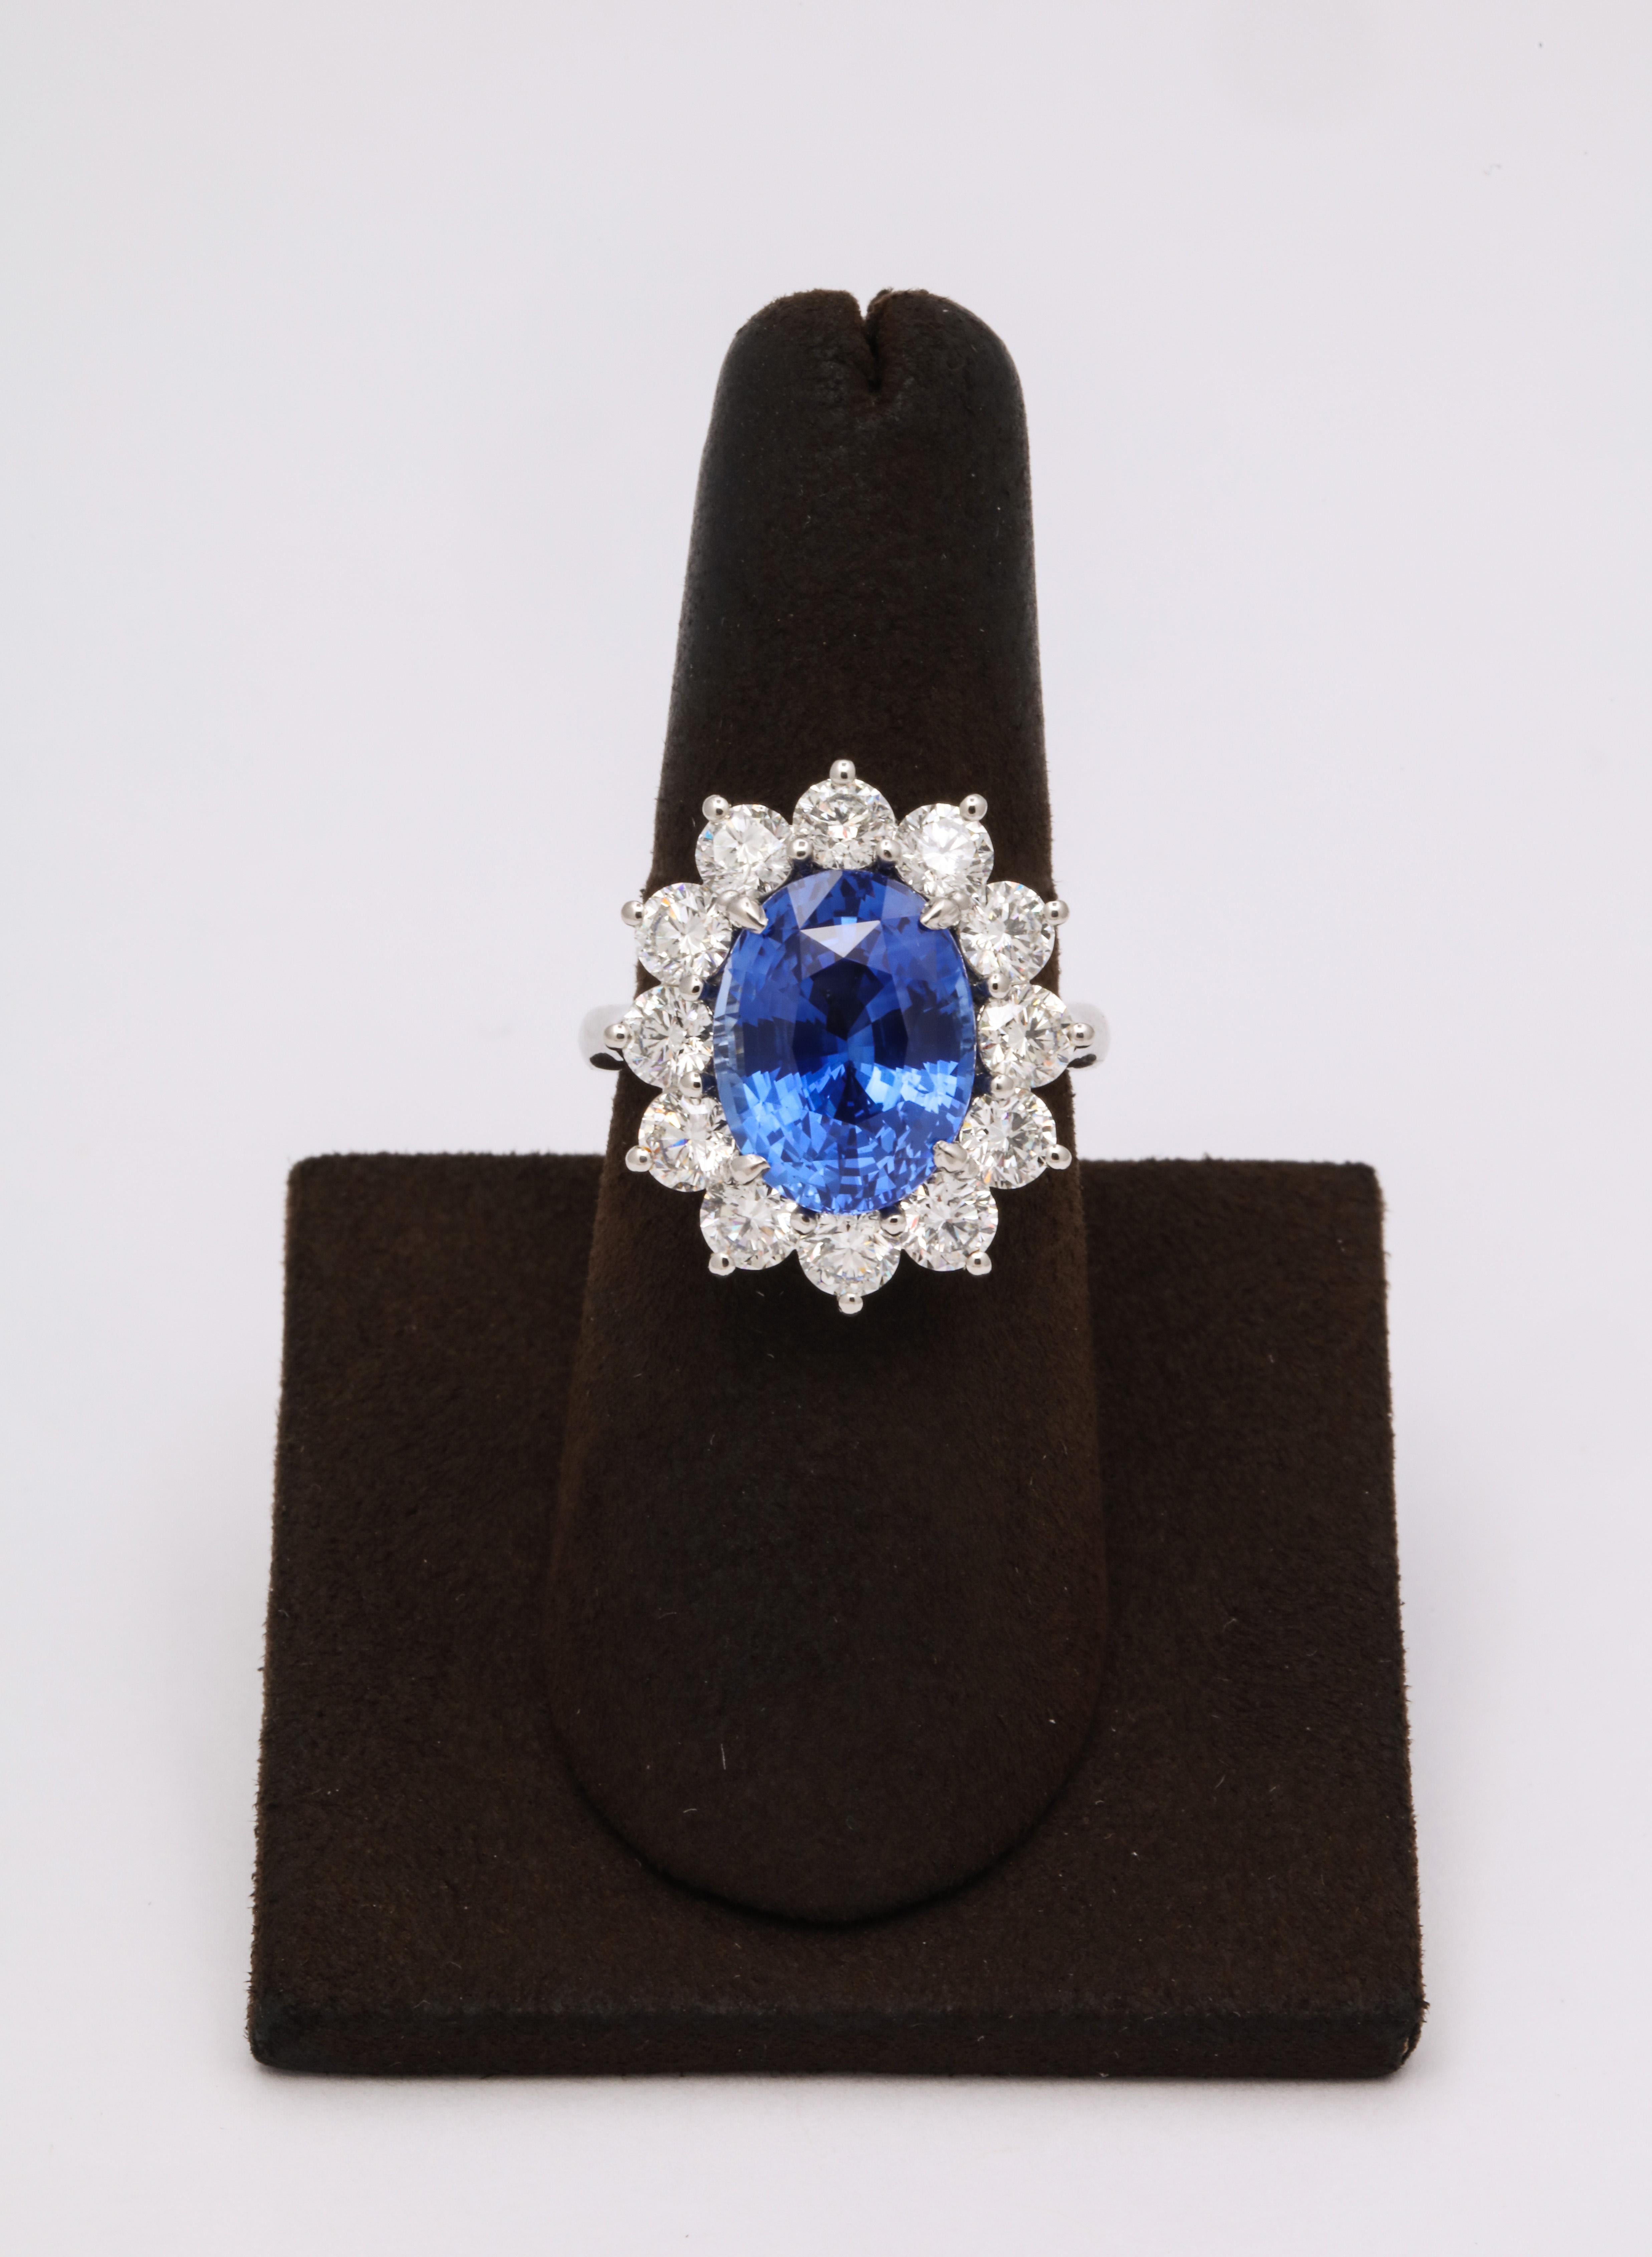 
Ein STUNNING Ceylon Blue Sapphire, gefasst in einer maßgeschneiderten Diamantfassung. 

7,53 Karat Blauer Ceylon-Saphir  

2,81 Karat weiße Diamanten im runden Brillantschliff

Platinmontierung nach Maß 

Der Ring ist derzeit eine Größe 7, kann